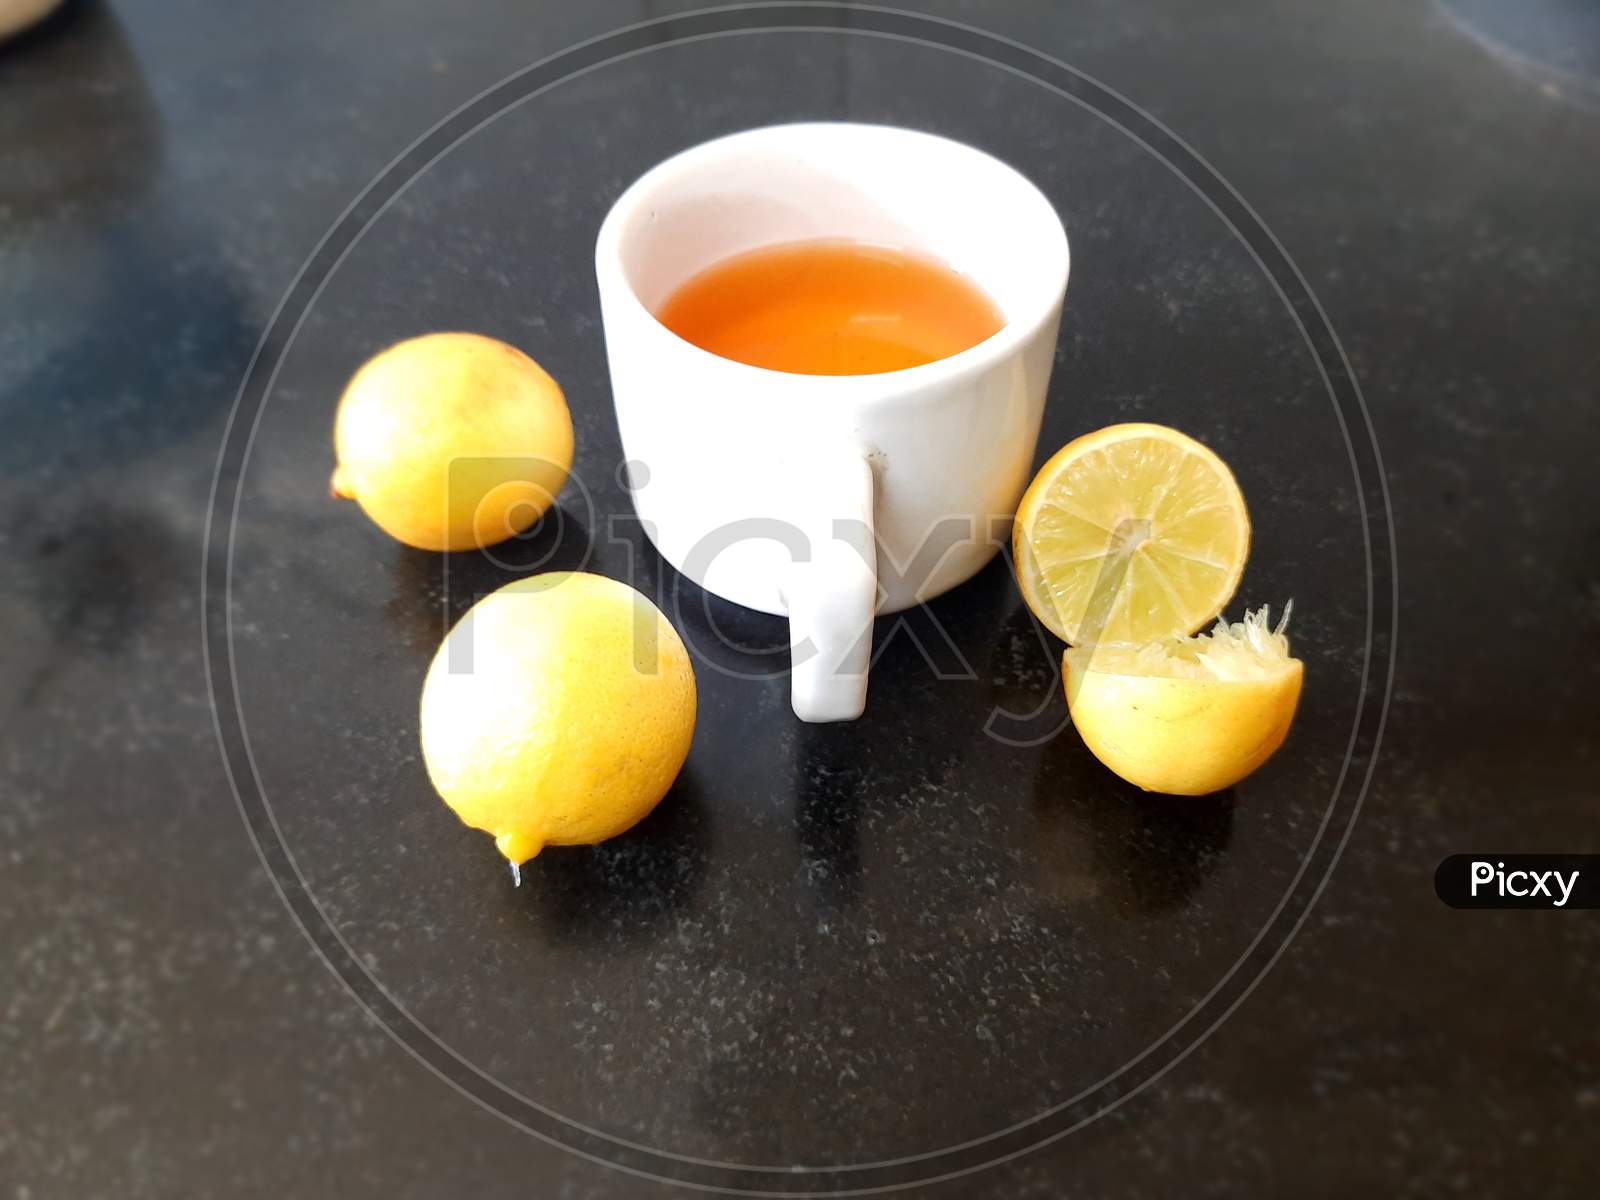 Cup of tea and lemon.